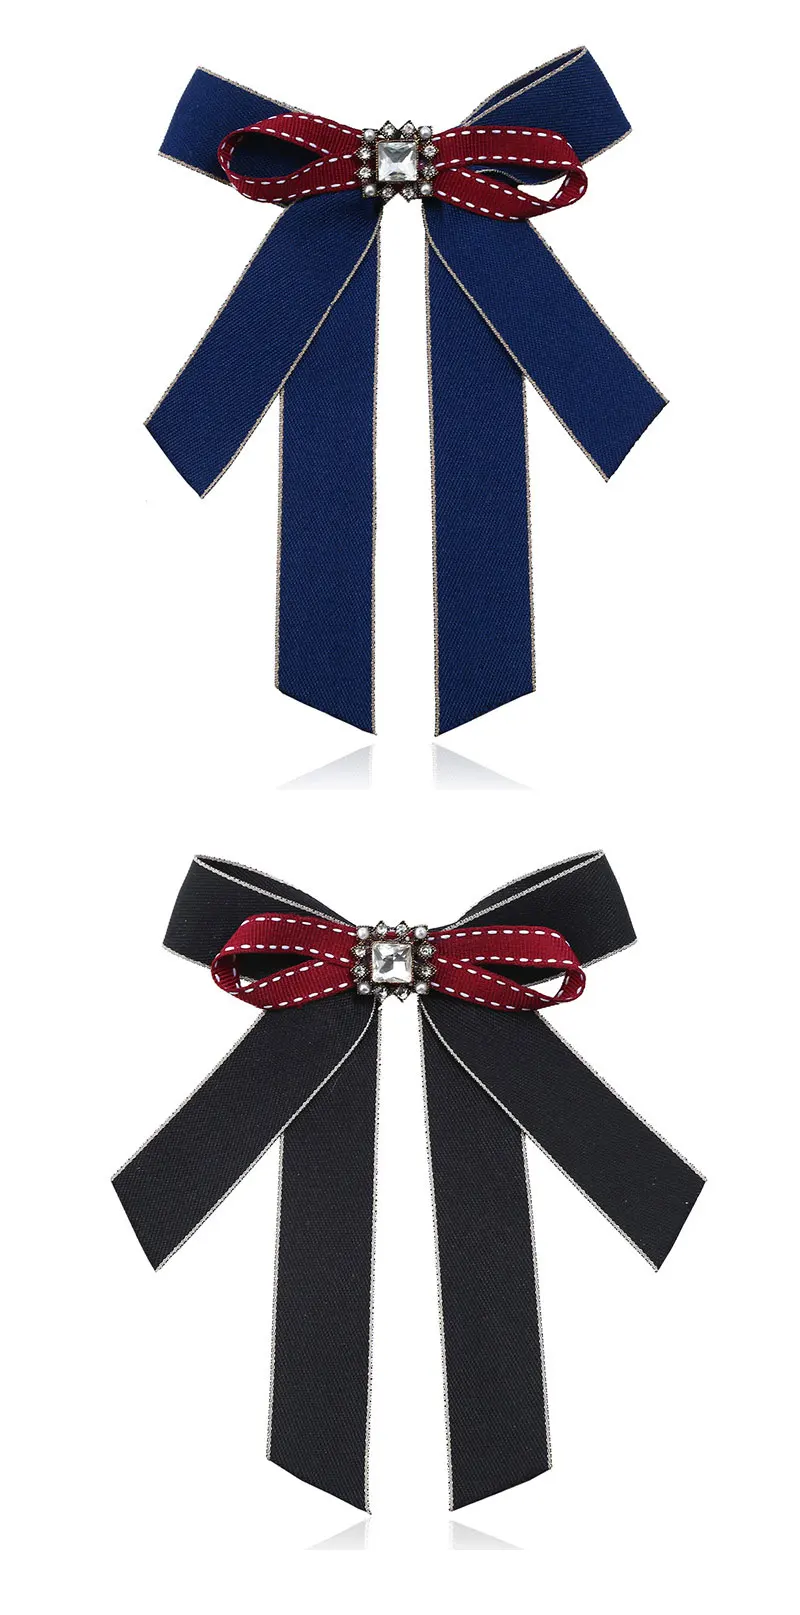 Ожерелье ветер Дикие аксессуары галстук-бабочка поддельные воротник ювелирные изделия